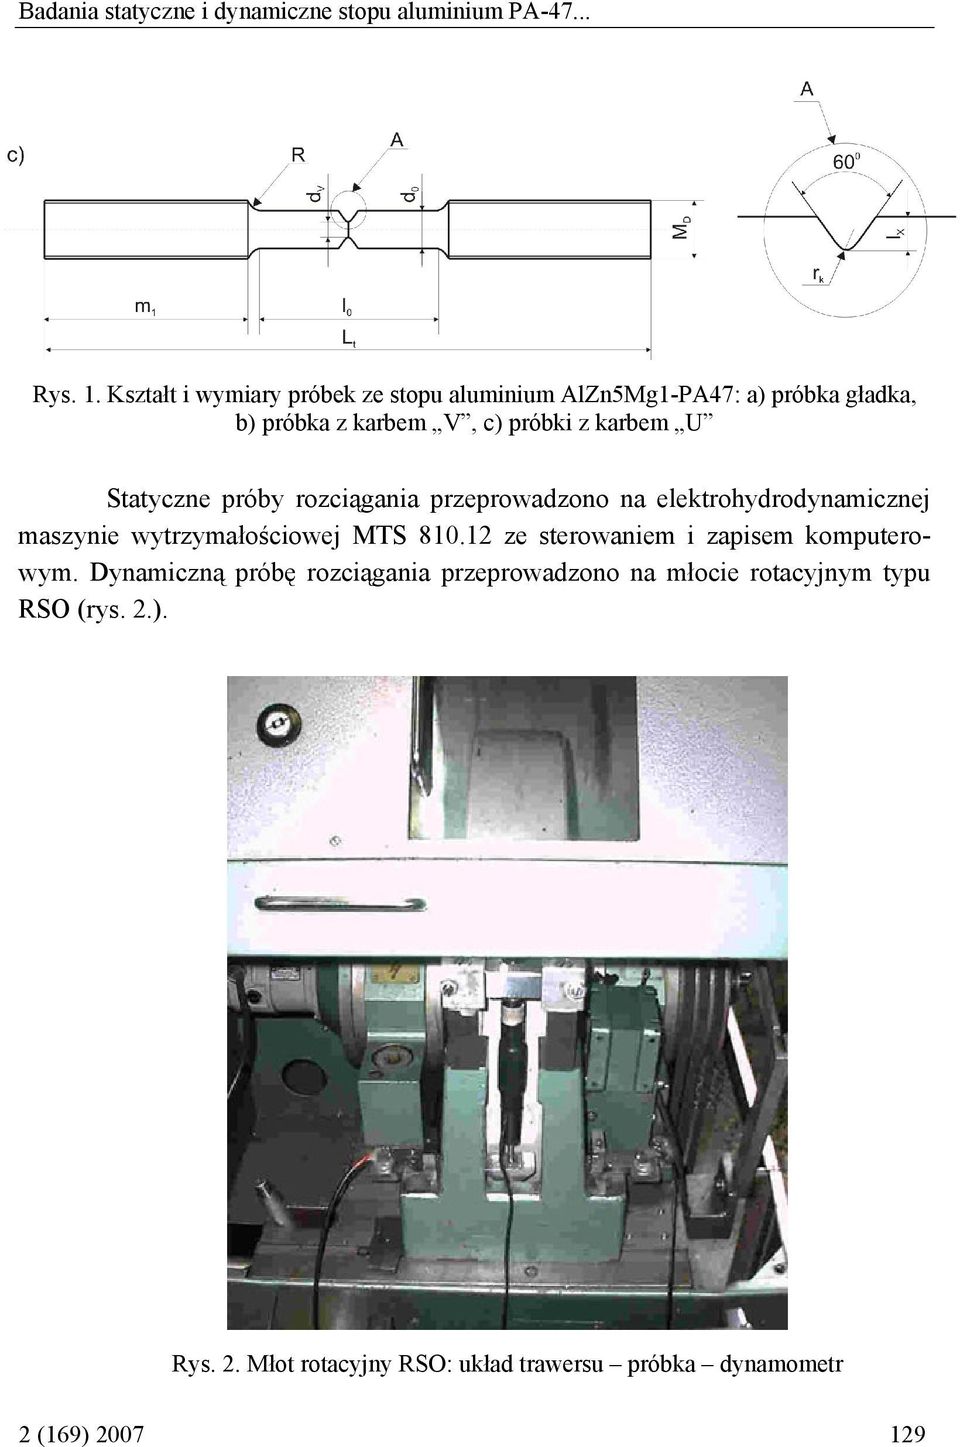 Statyczne próby rozciągania przeprowadzono na elektrohydrodynamicznej maszynie wytrzymałościowej MTS 810.